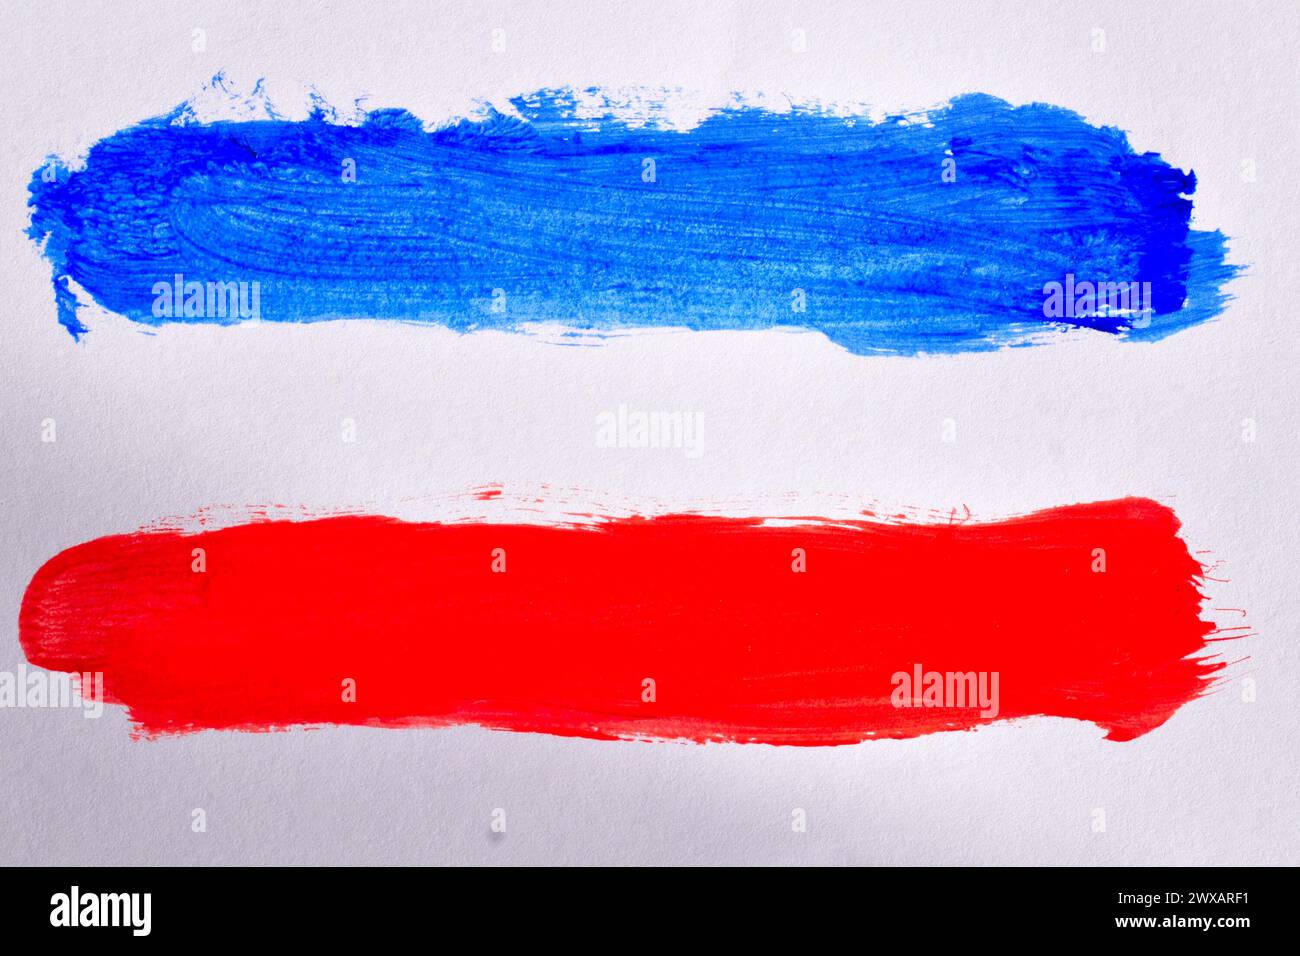 Linee bianche, blu e rosse dipinte con acquerelli su sfondo bianco simile alla bandiera di Serbia e Montenegro. Foto Stock